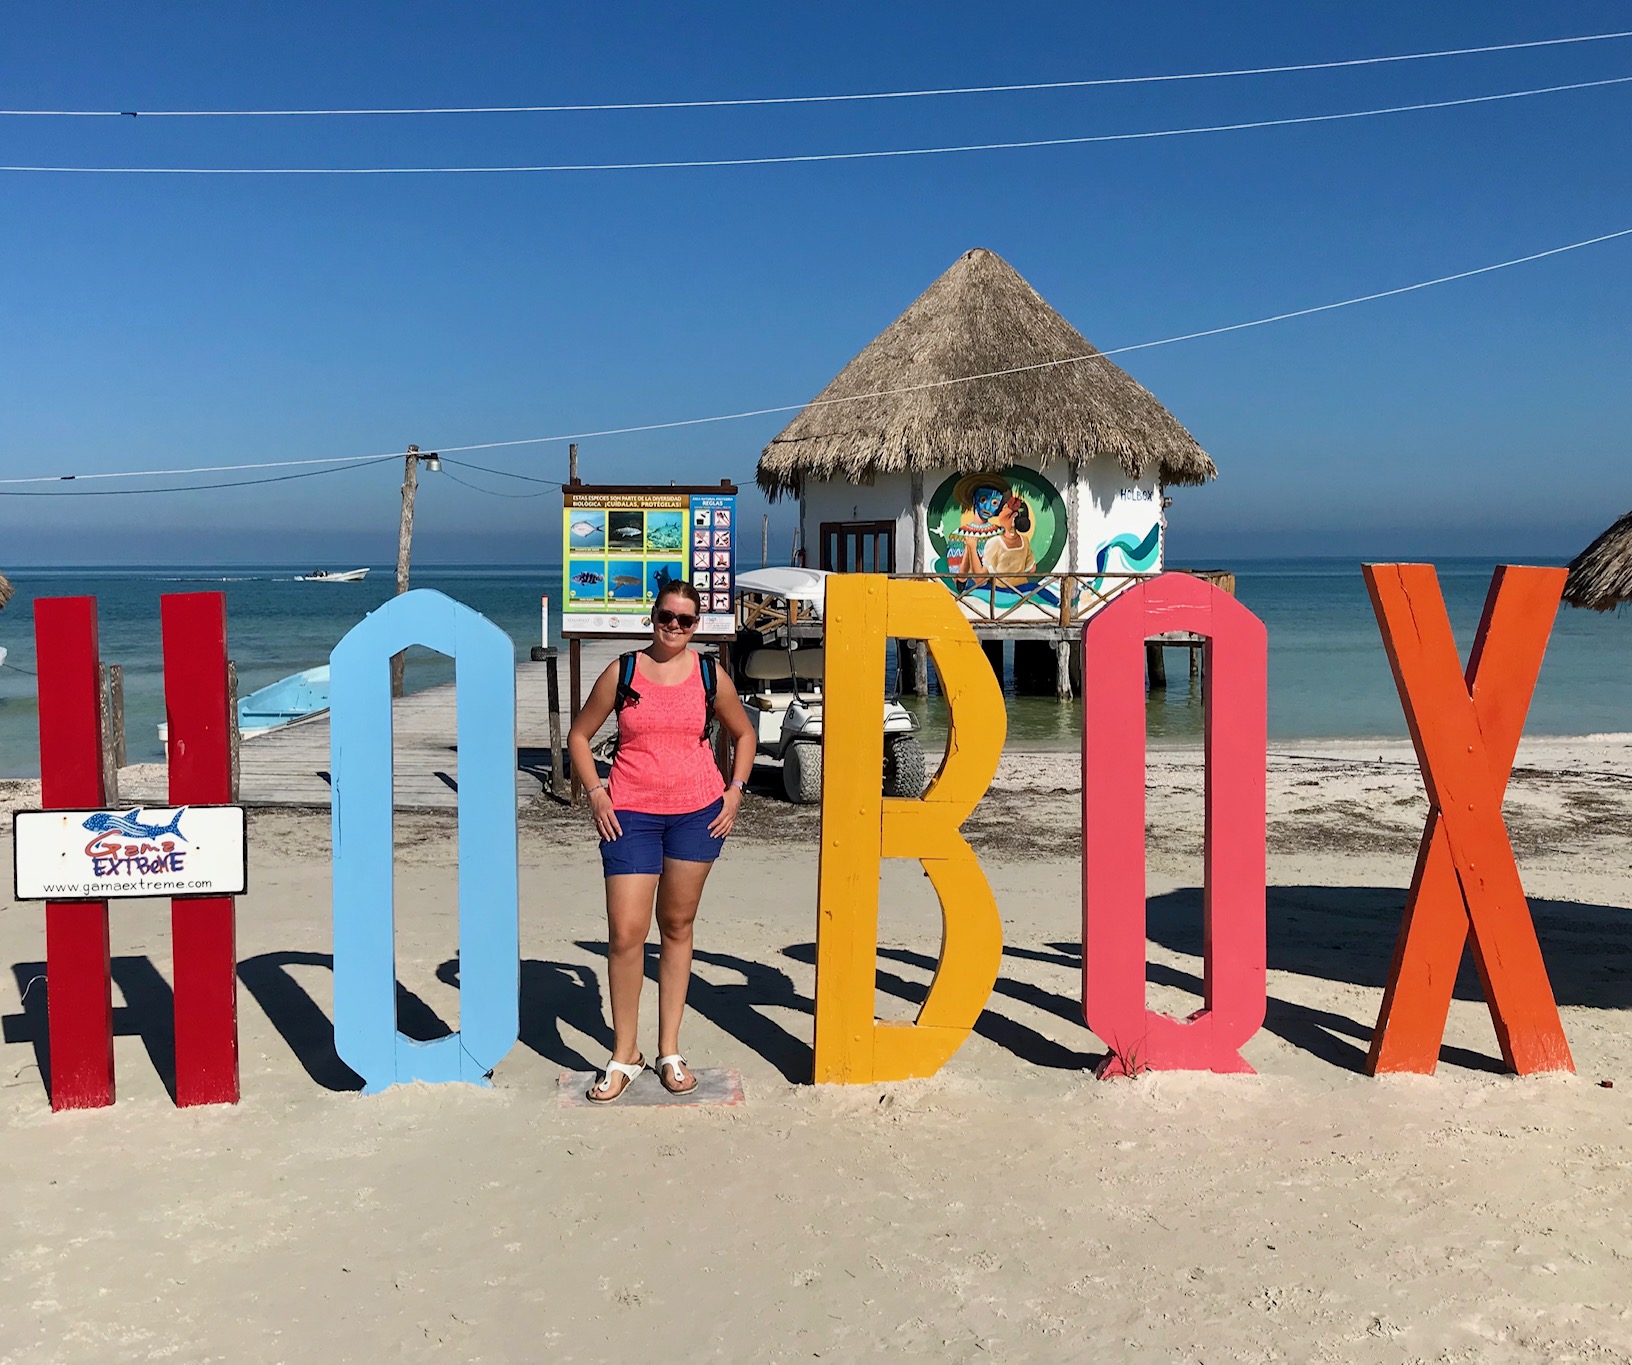 De Vakantievragen-tag – Terug uit Mexico!